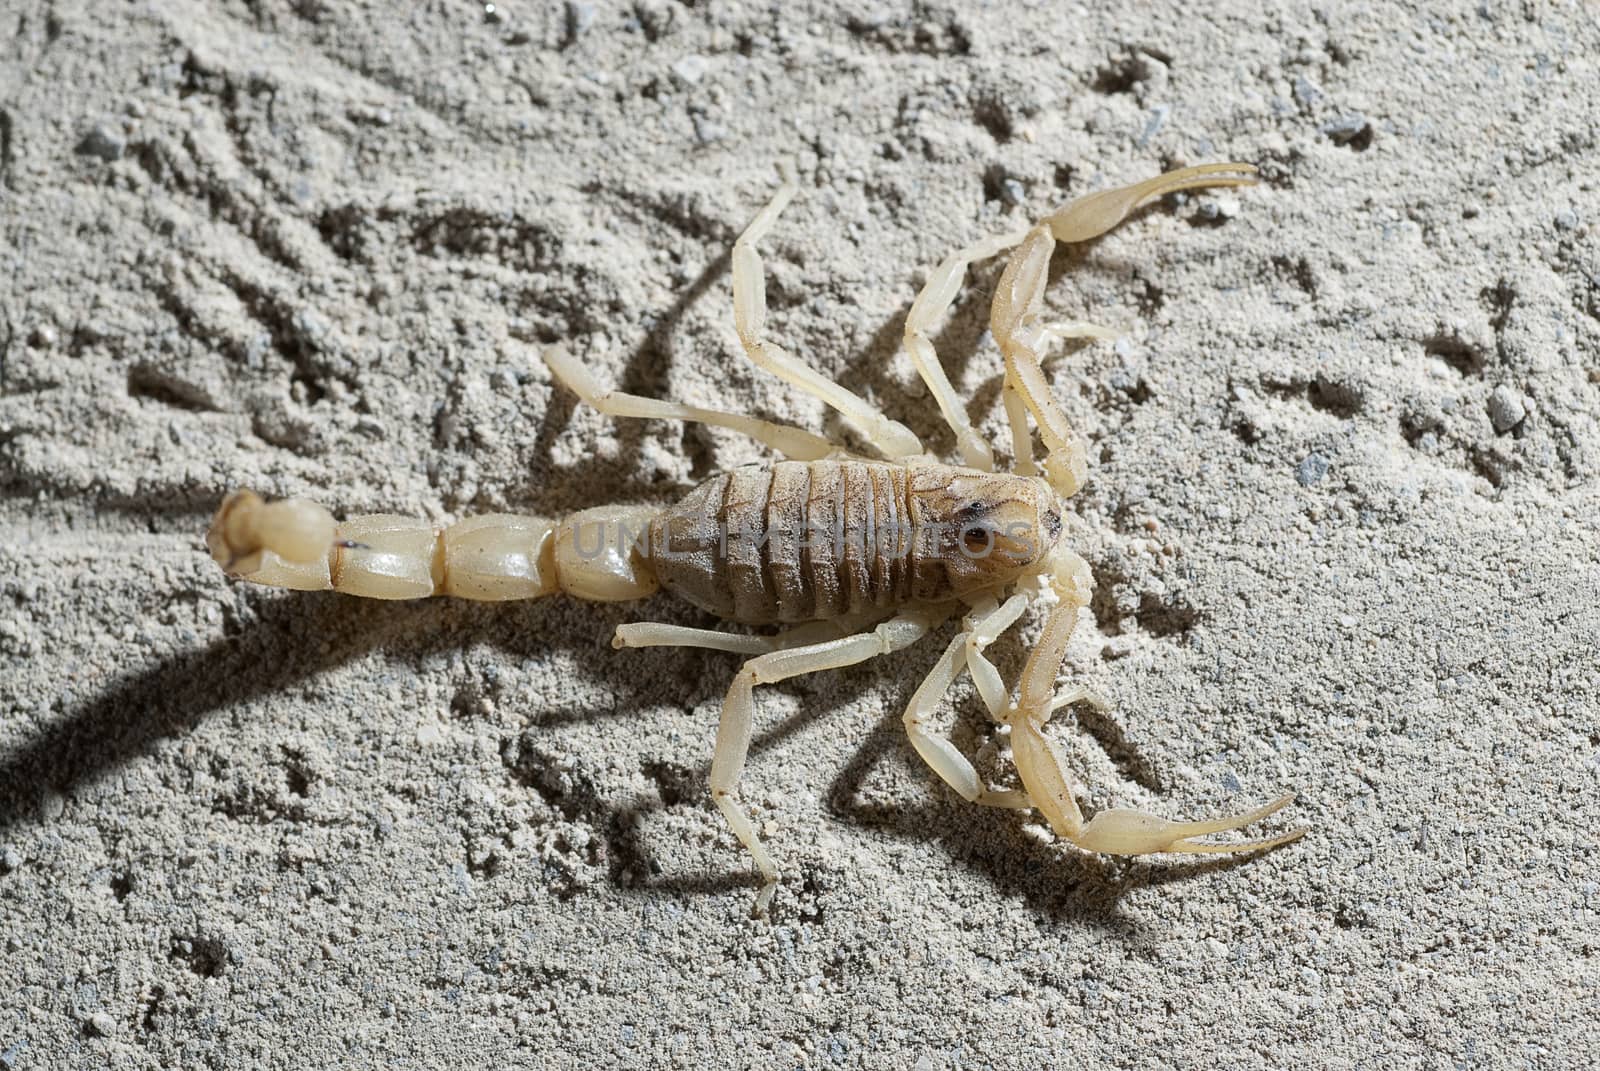 Scorpion, Buthus occitanus, yellow scorpion, sting